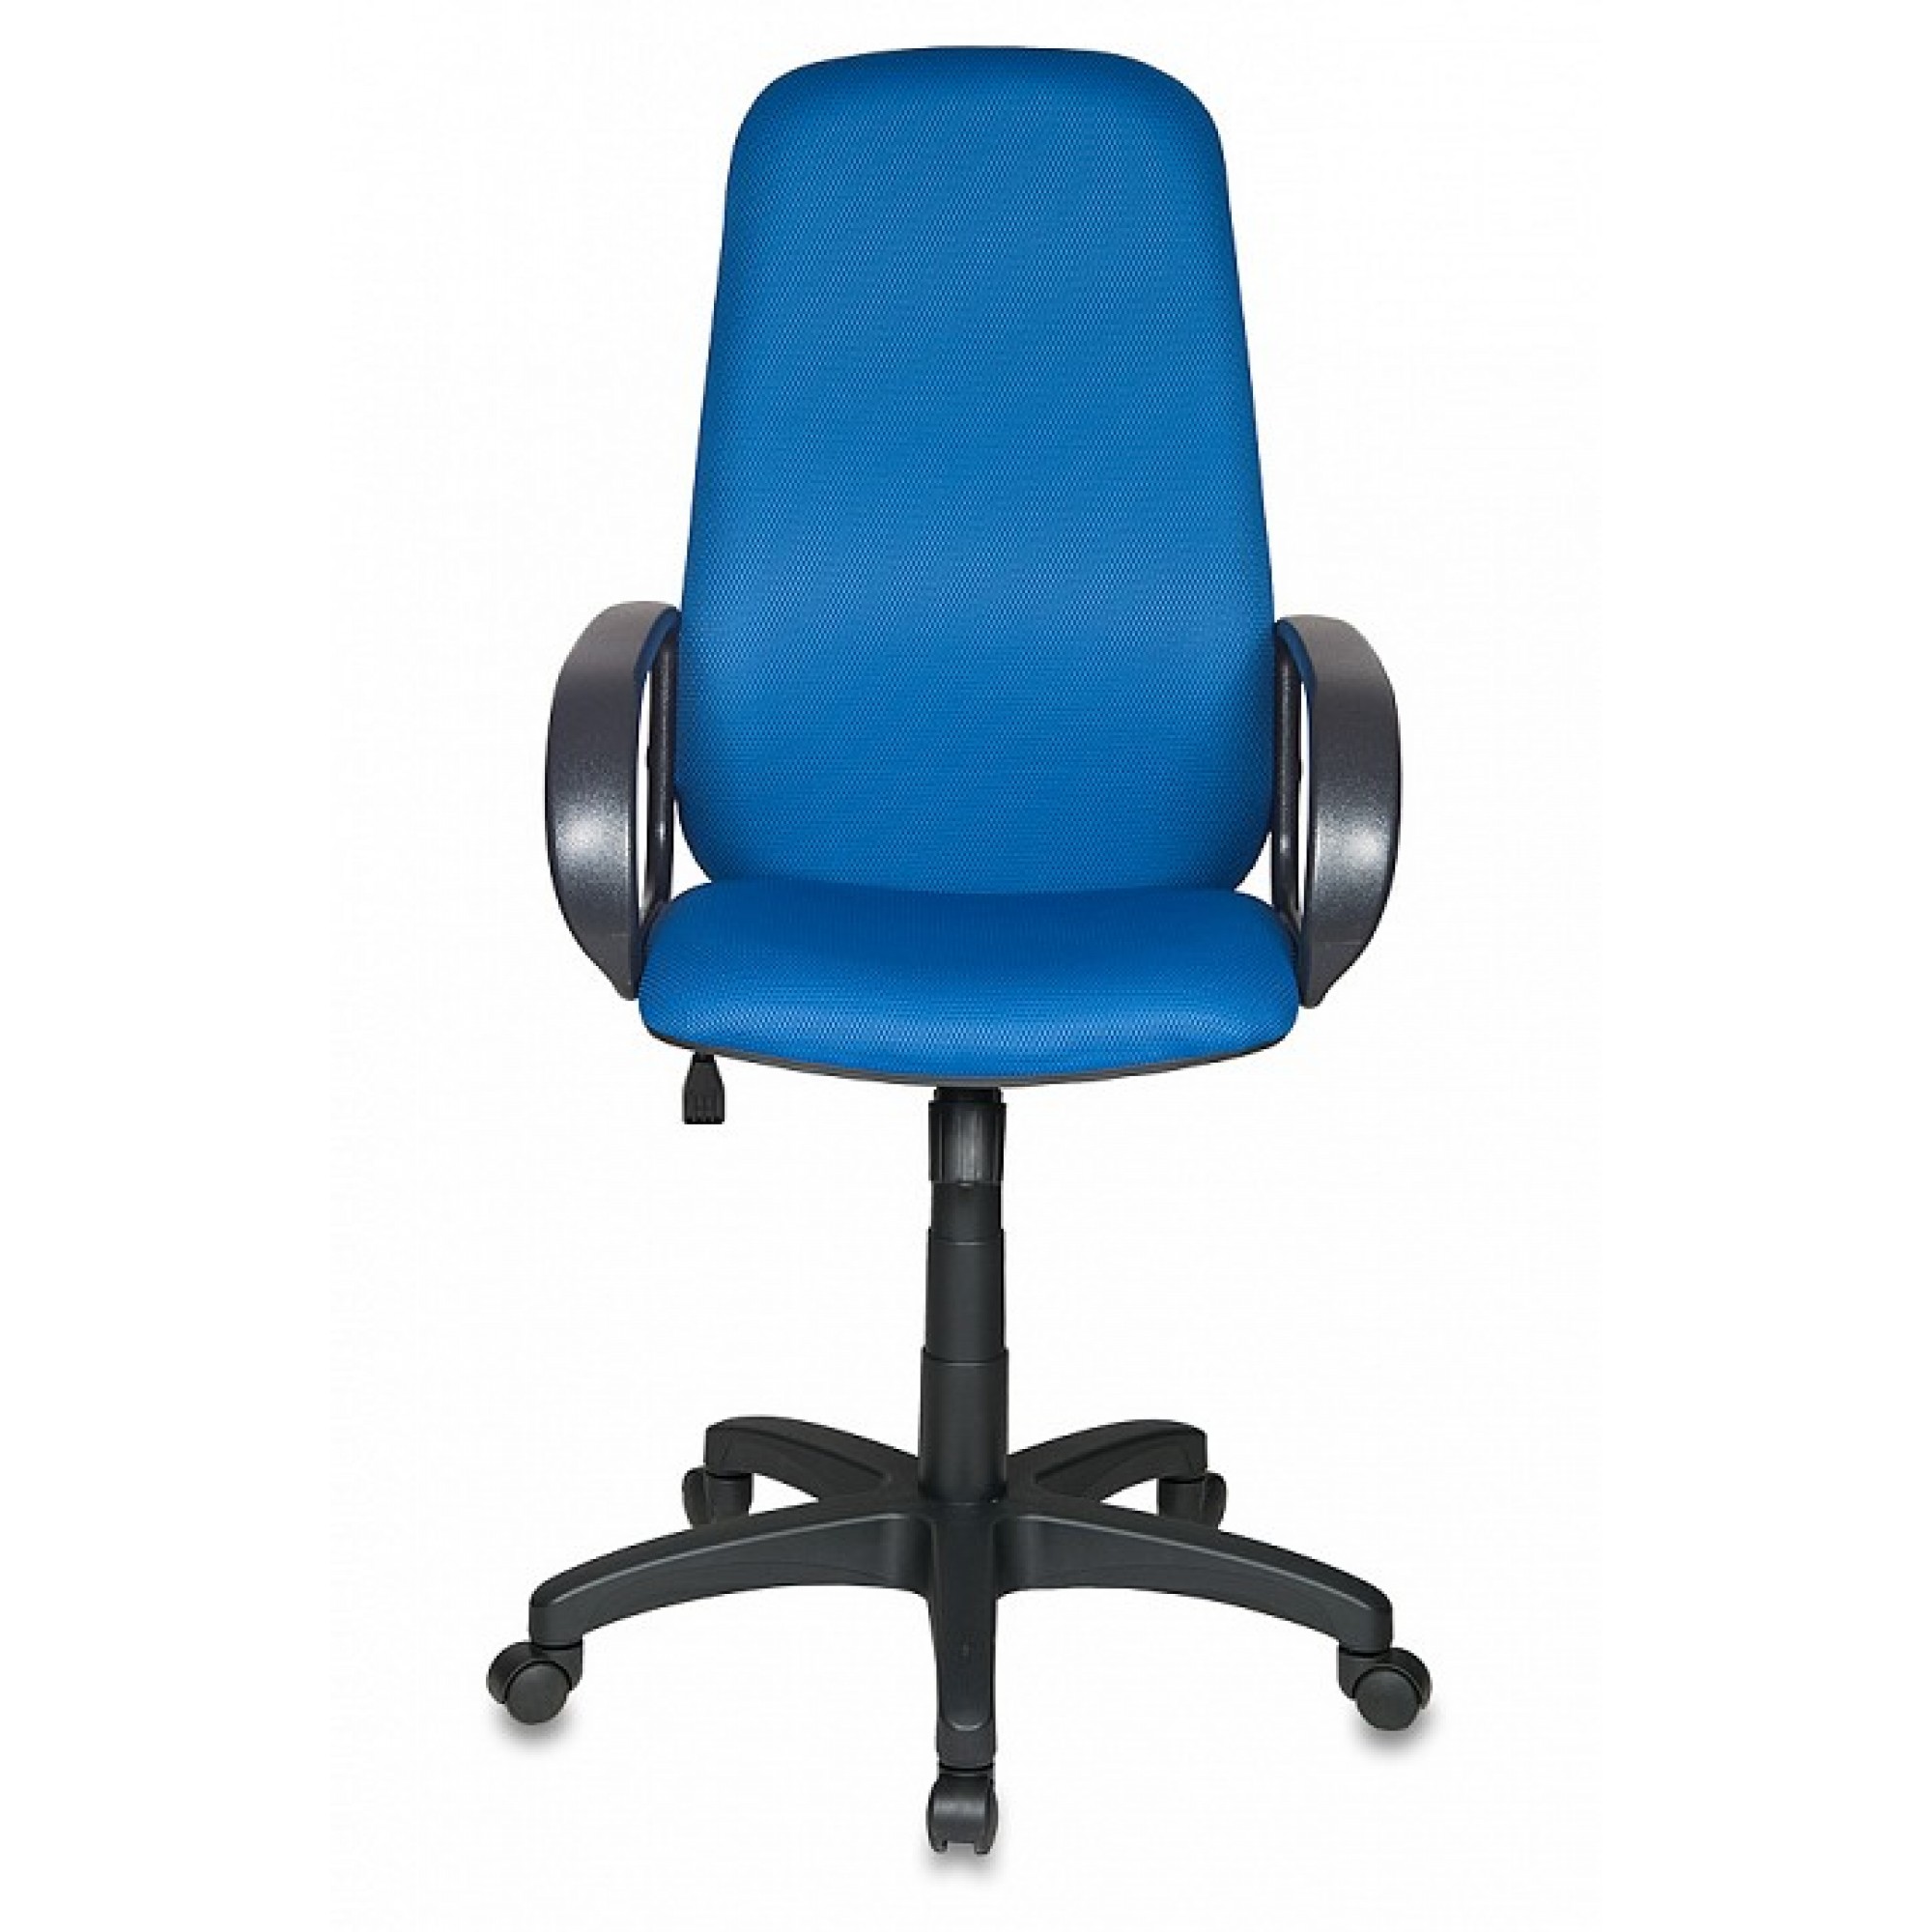 Кресло компьютерное Бюрократ Ch-808AXSN синее    BUR_Ch-808AXSN_TW-10